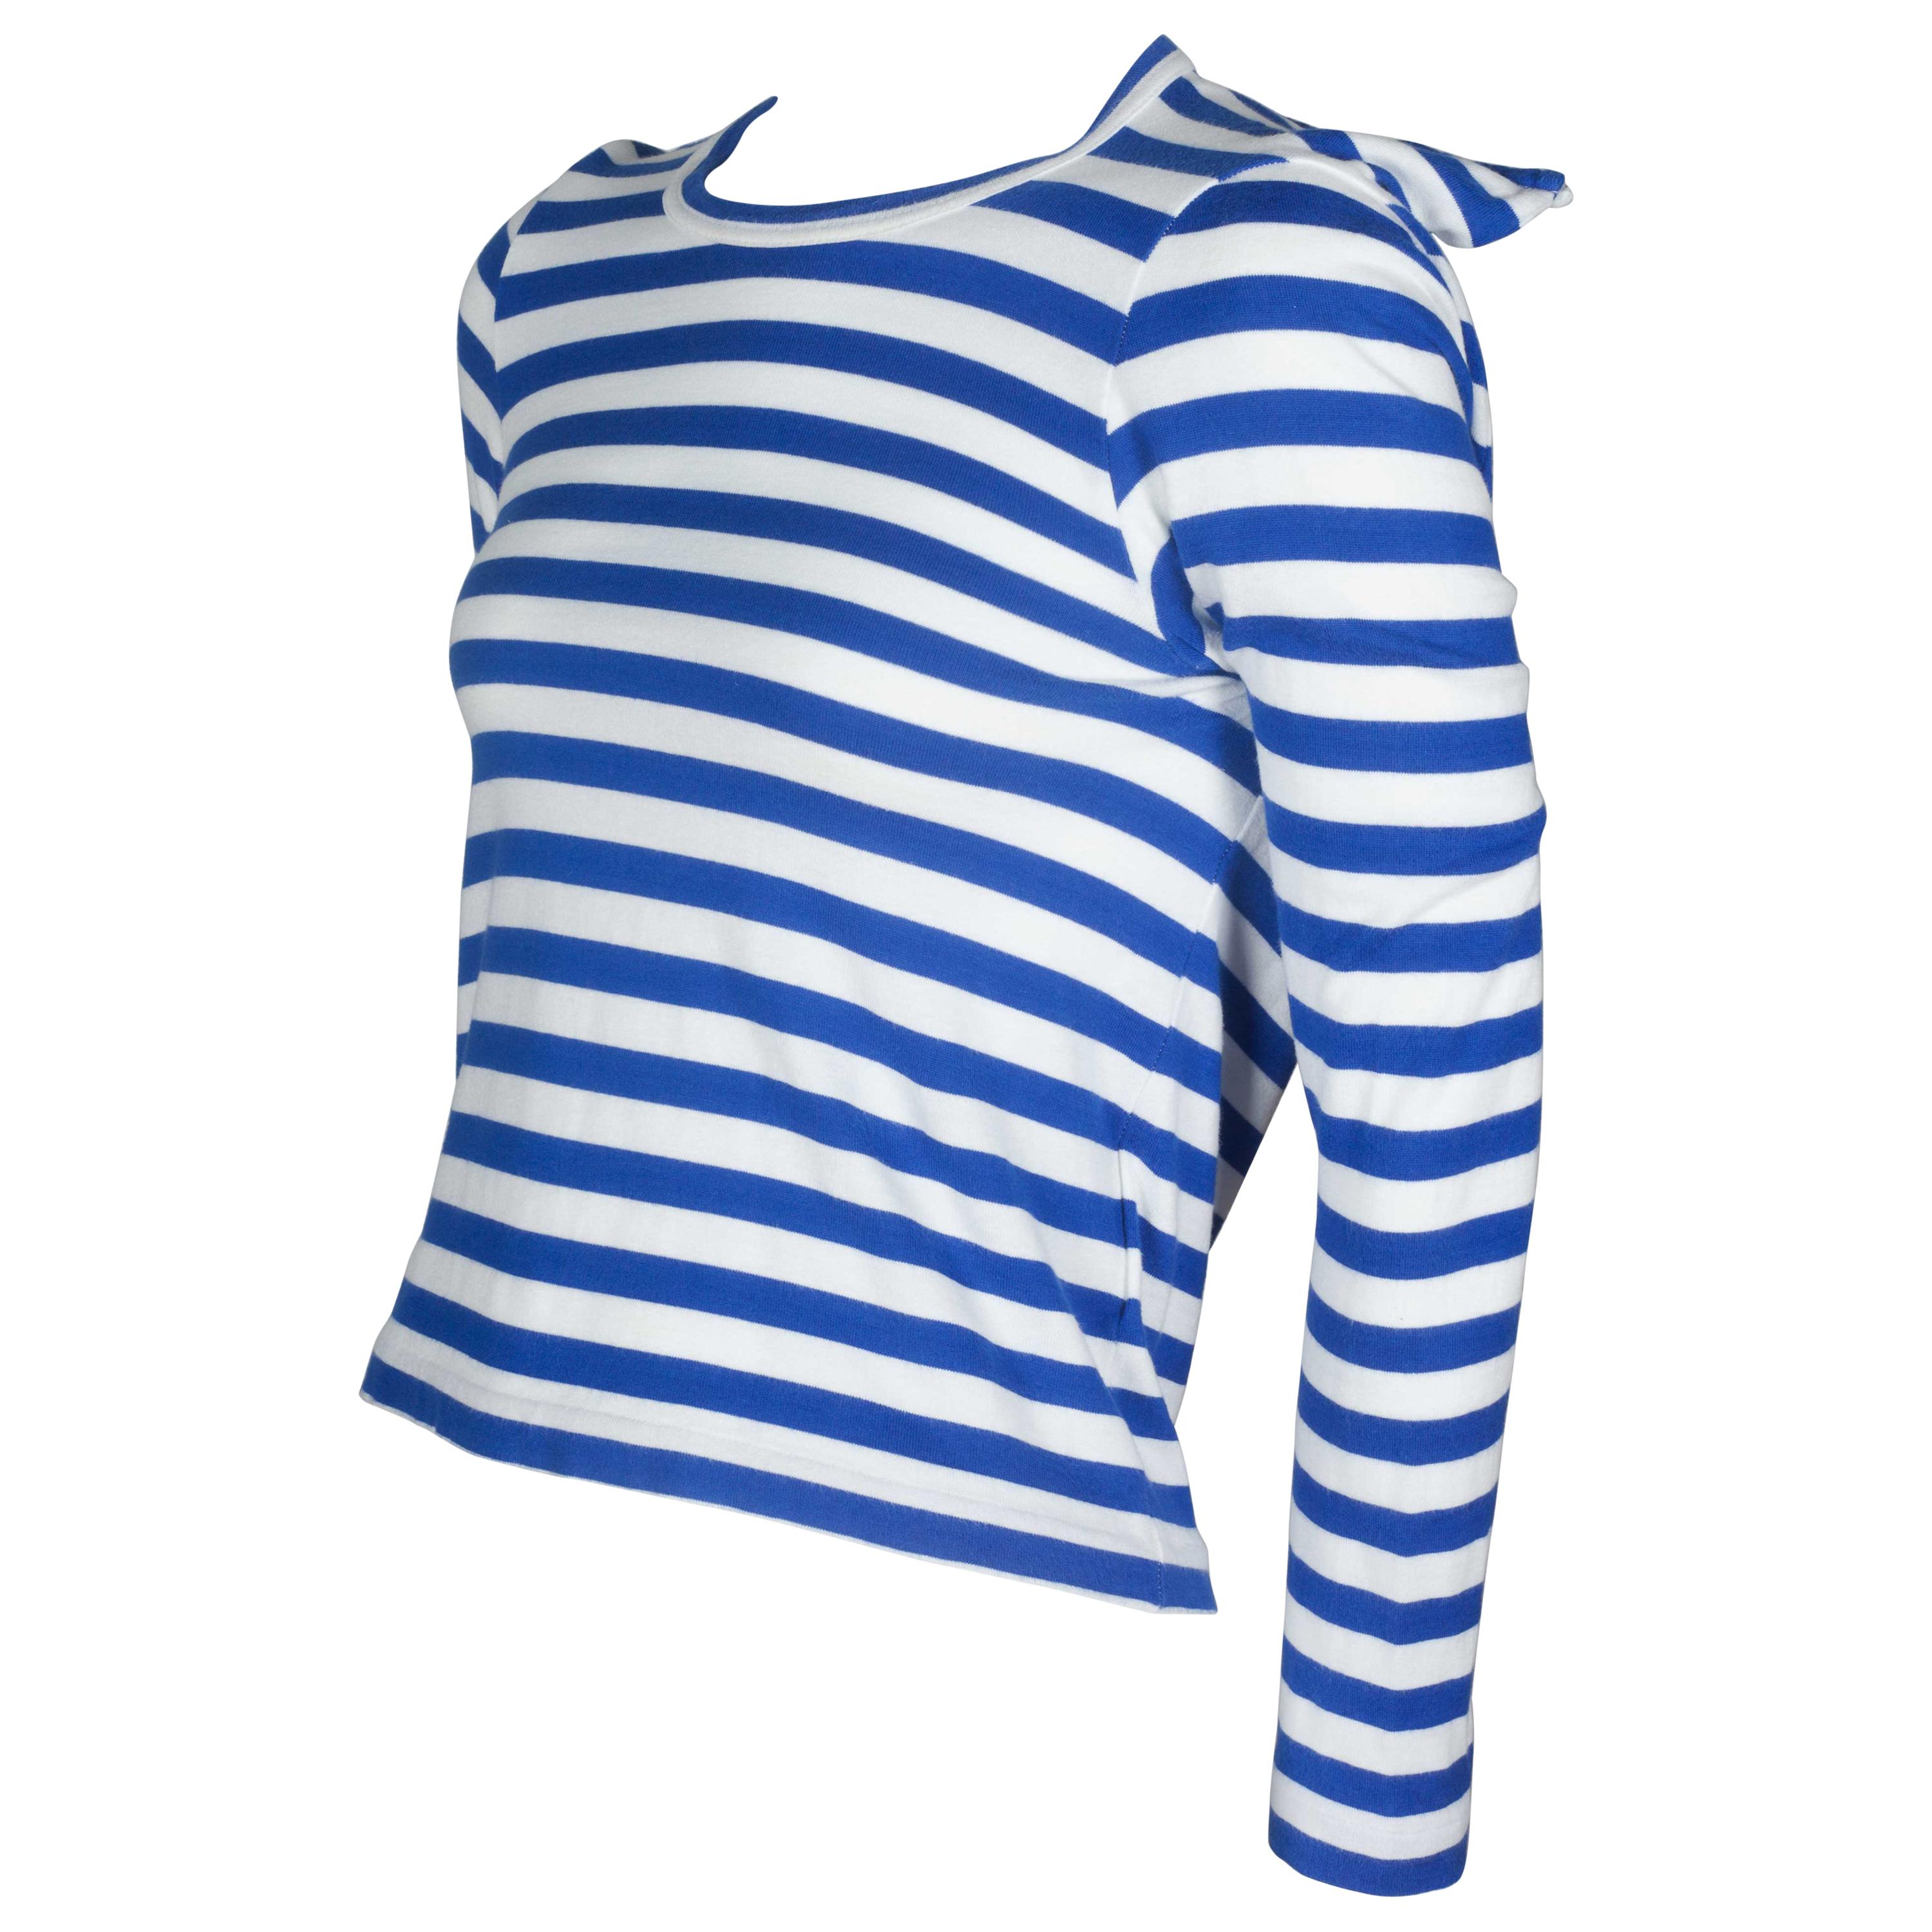 Comme des Garçons Square Navy Blue Striped Shirt, 2007